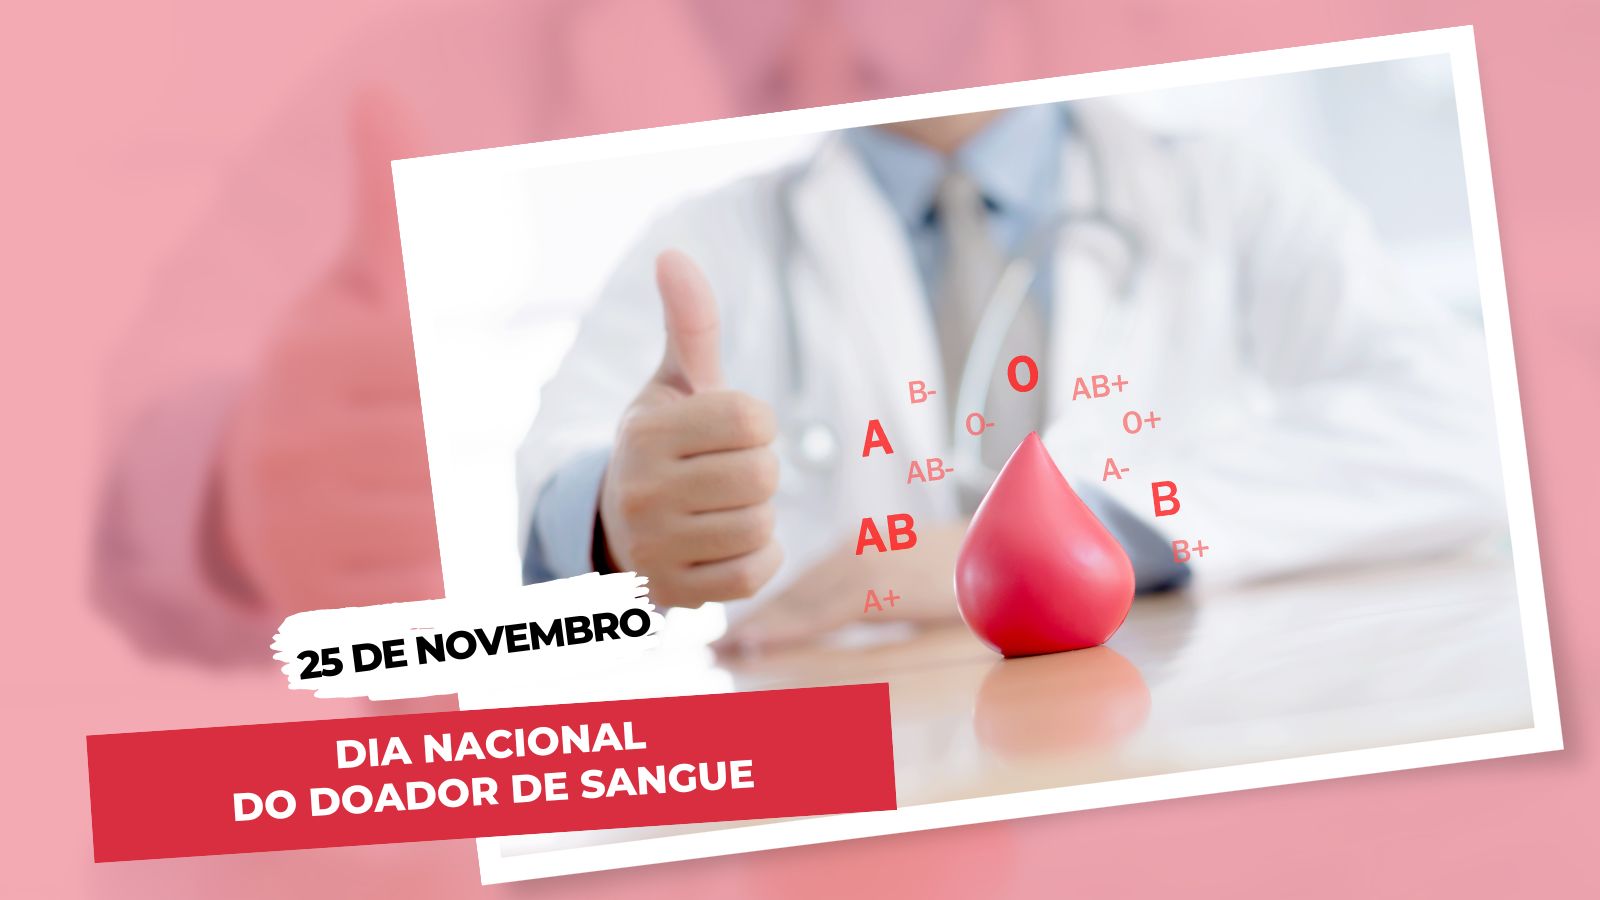 25 de novembro - Dia Nacional do Doador de Sangue